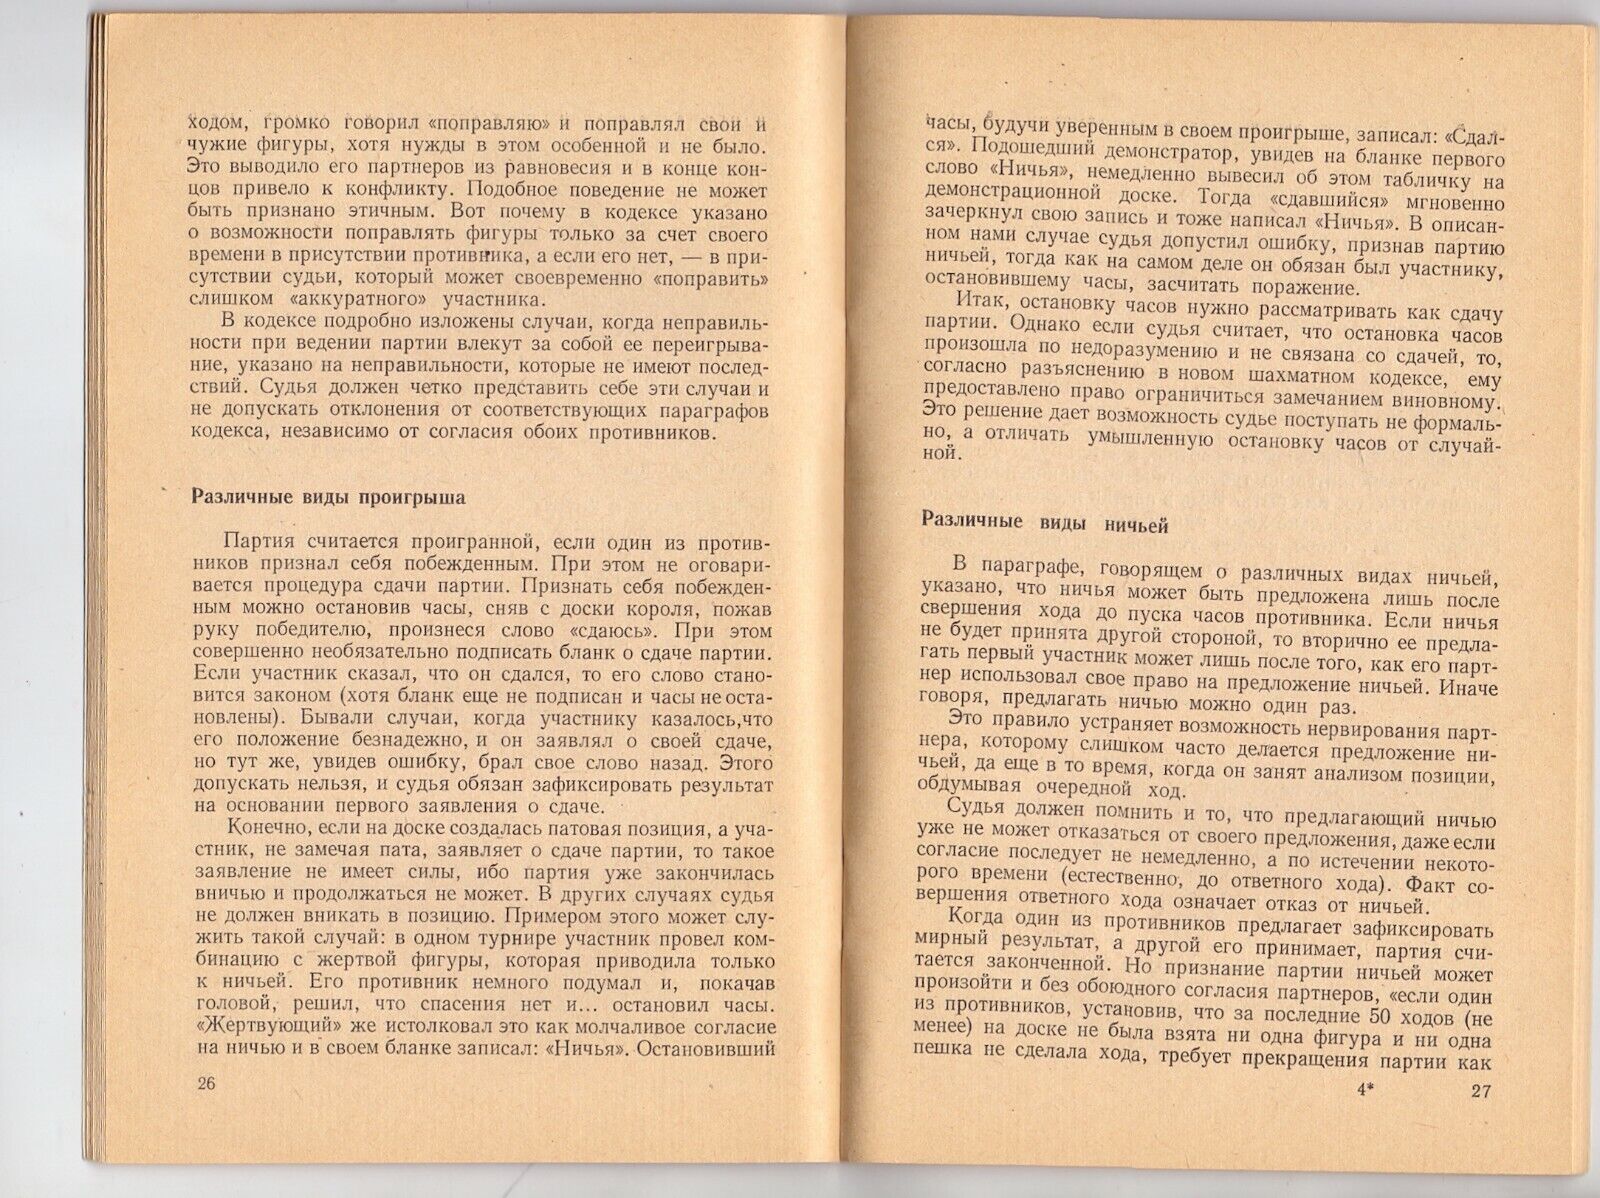 11023.Chess Book signed by Karakhan. 1966. Baturinsky-Karpov library